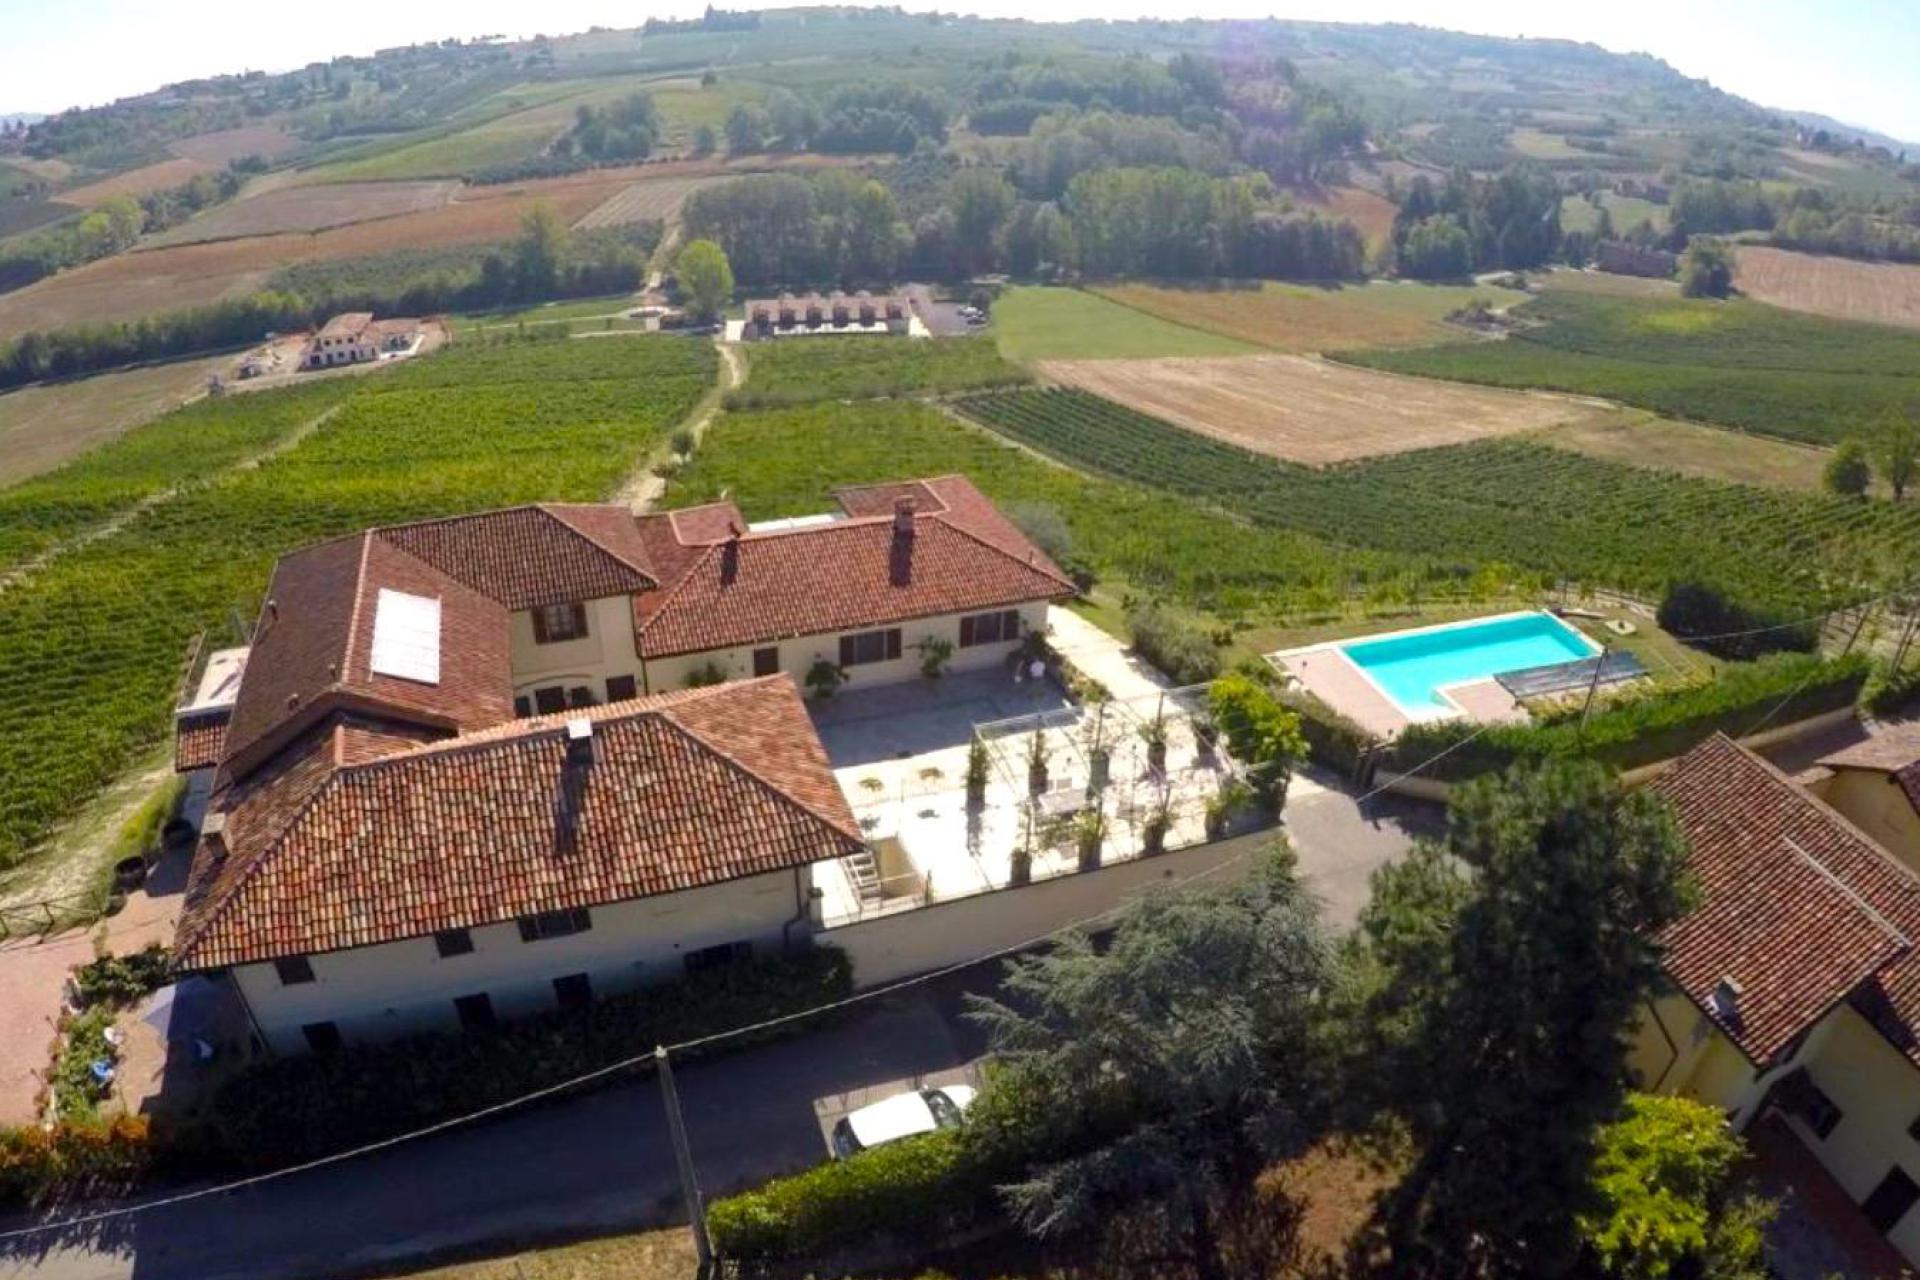 Agriturismo und Weingut, in den Hügeln des Piemonts